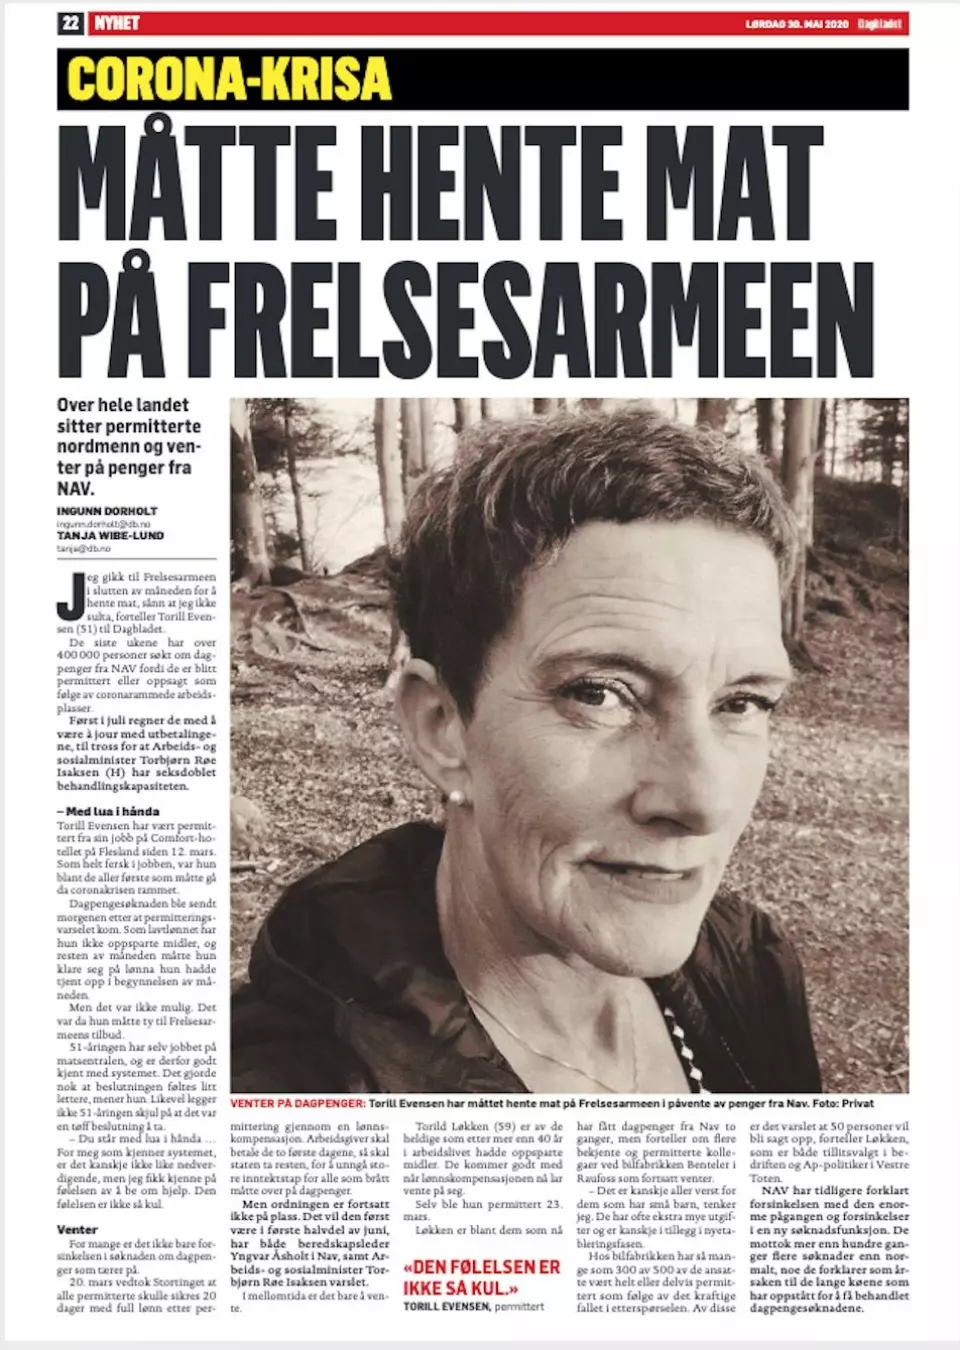 Faksemile, Dagbladet, 30.05.20